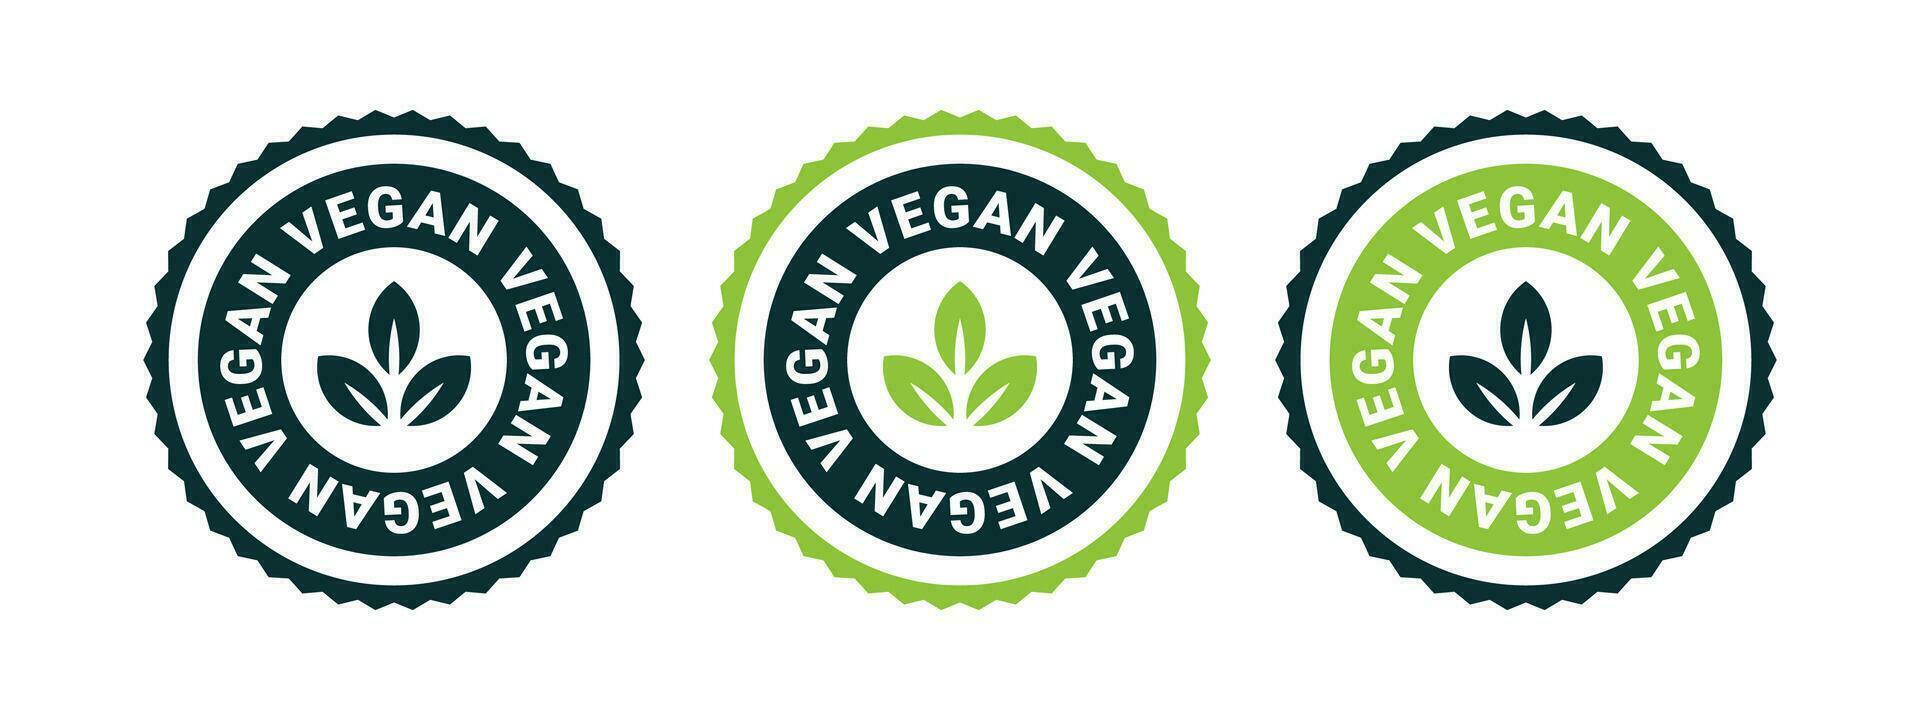 vegano icone. vegano badge o etichette. naturale e biologico prodotti. vettore scalabile grafica